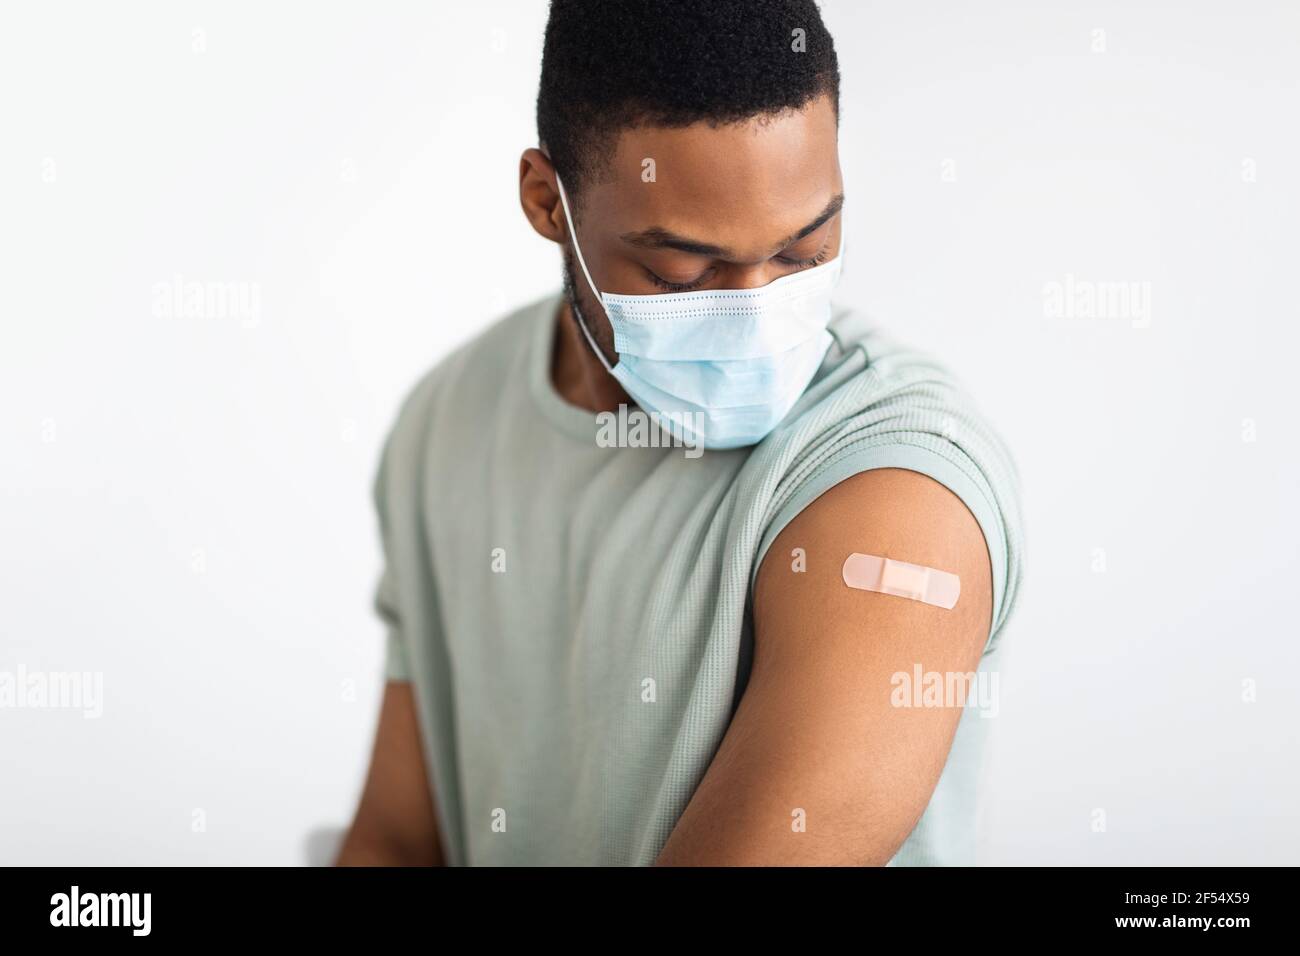 Hombre vacunado mirando el brazo con el yeso de inyección, fondo blanco Foto de stock